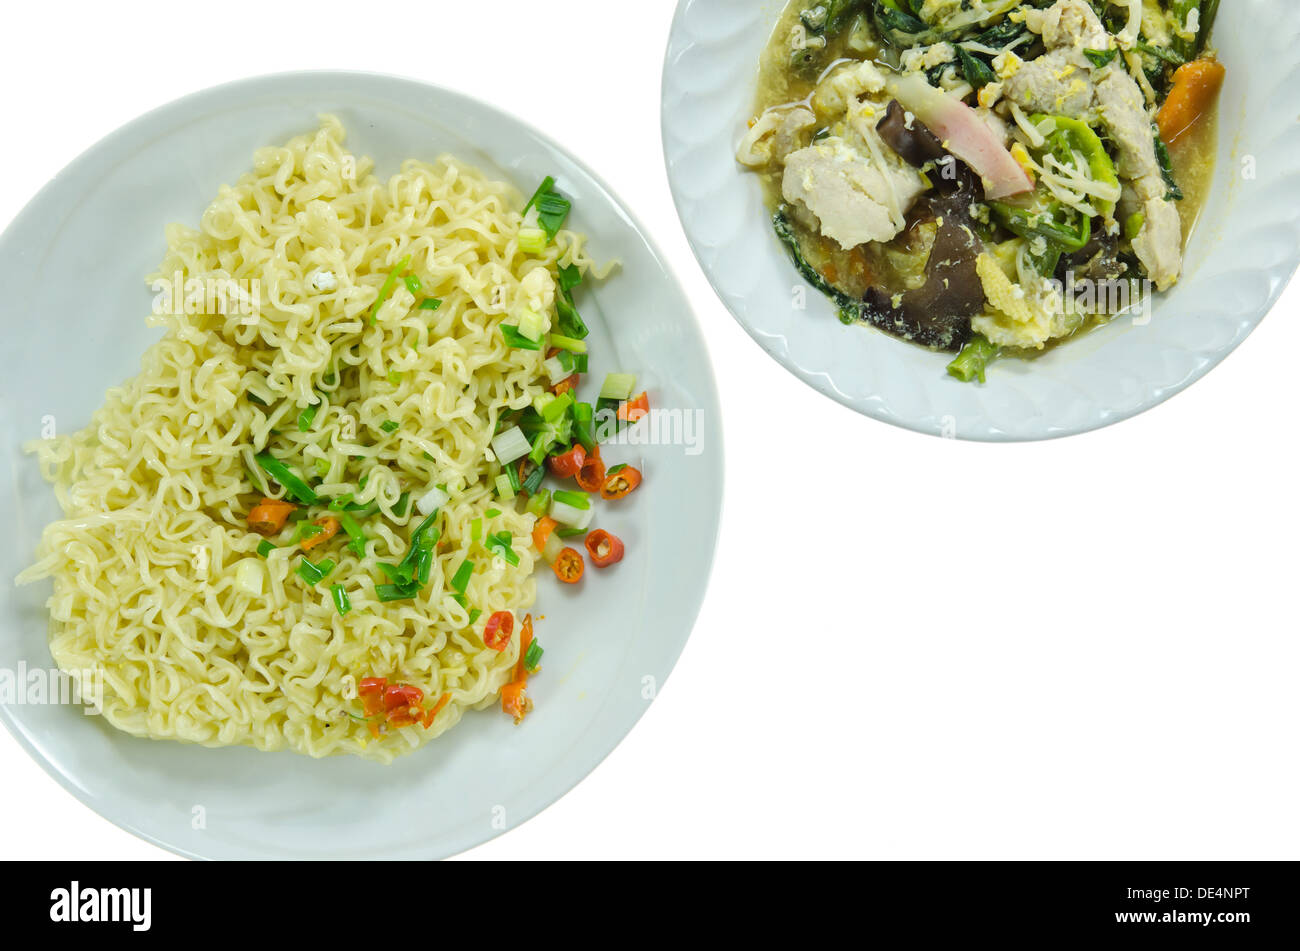 Ansicht von oben gekocht instant-Nudeln auf weiße Schale und Suppe mit Schweinefleisch, Gemüse in Schüssel mischen, auf weißem Hintergrund Stockfoto